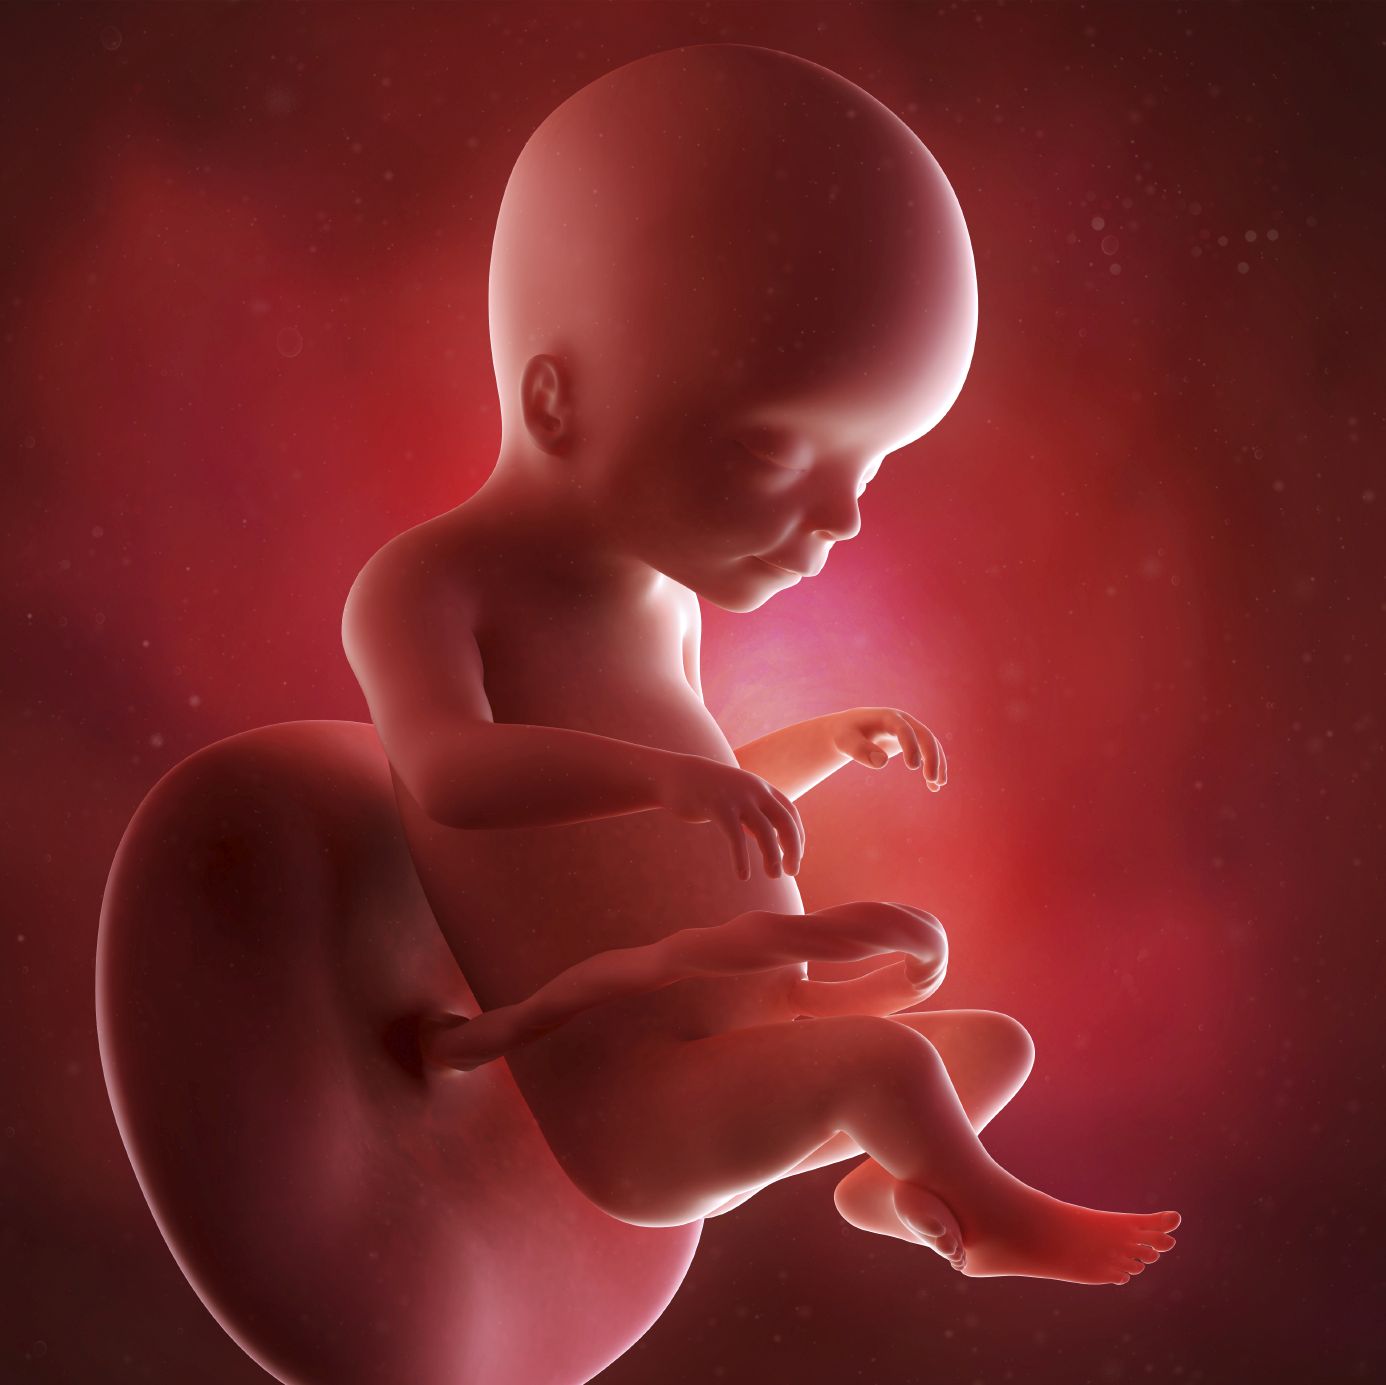 fetus 20 weeks